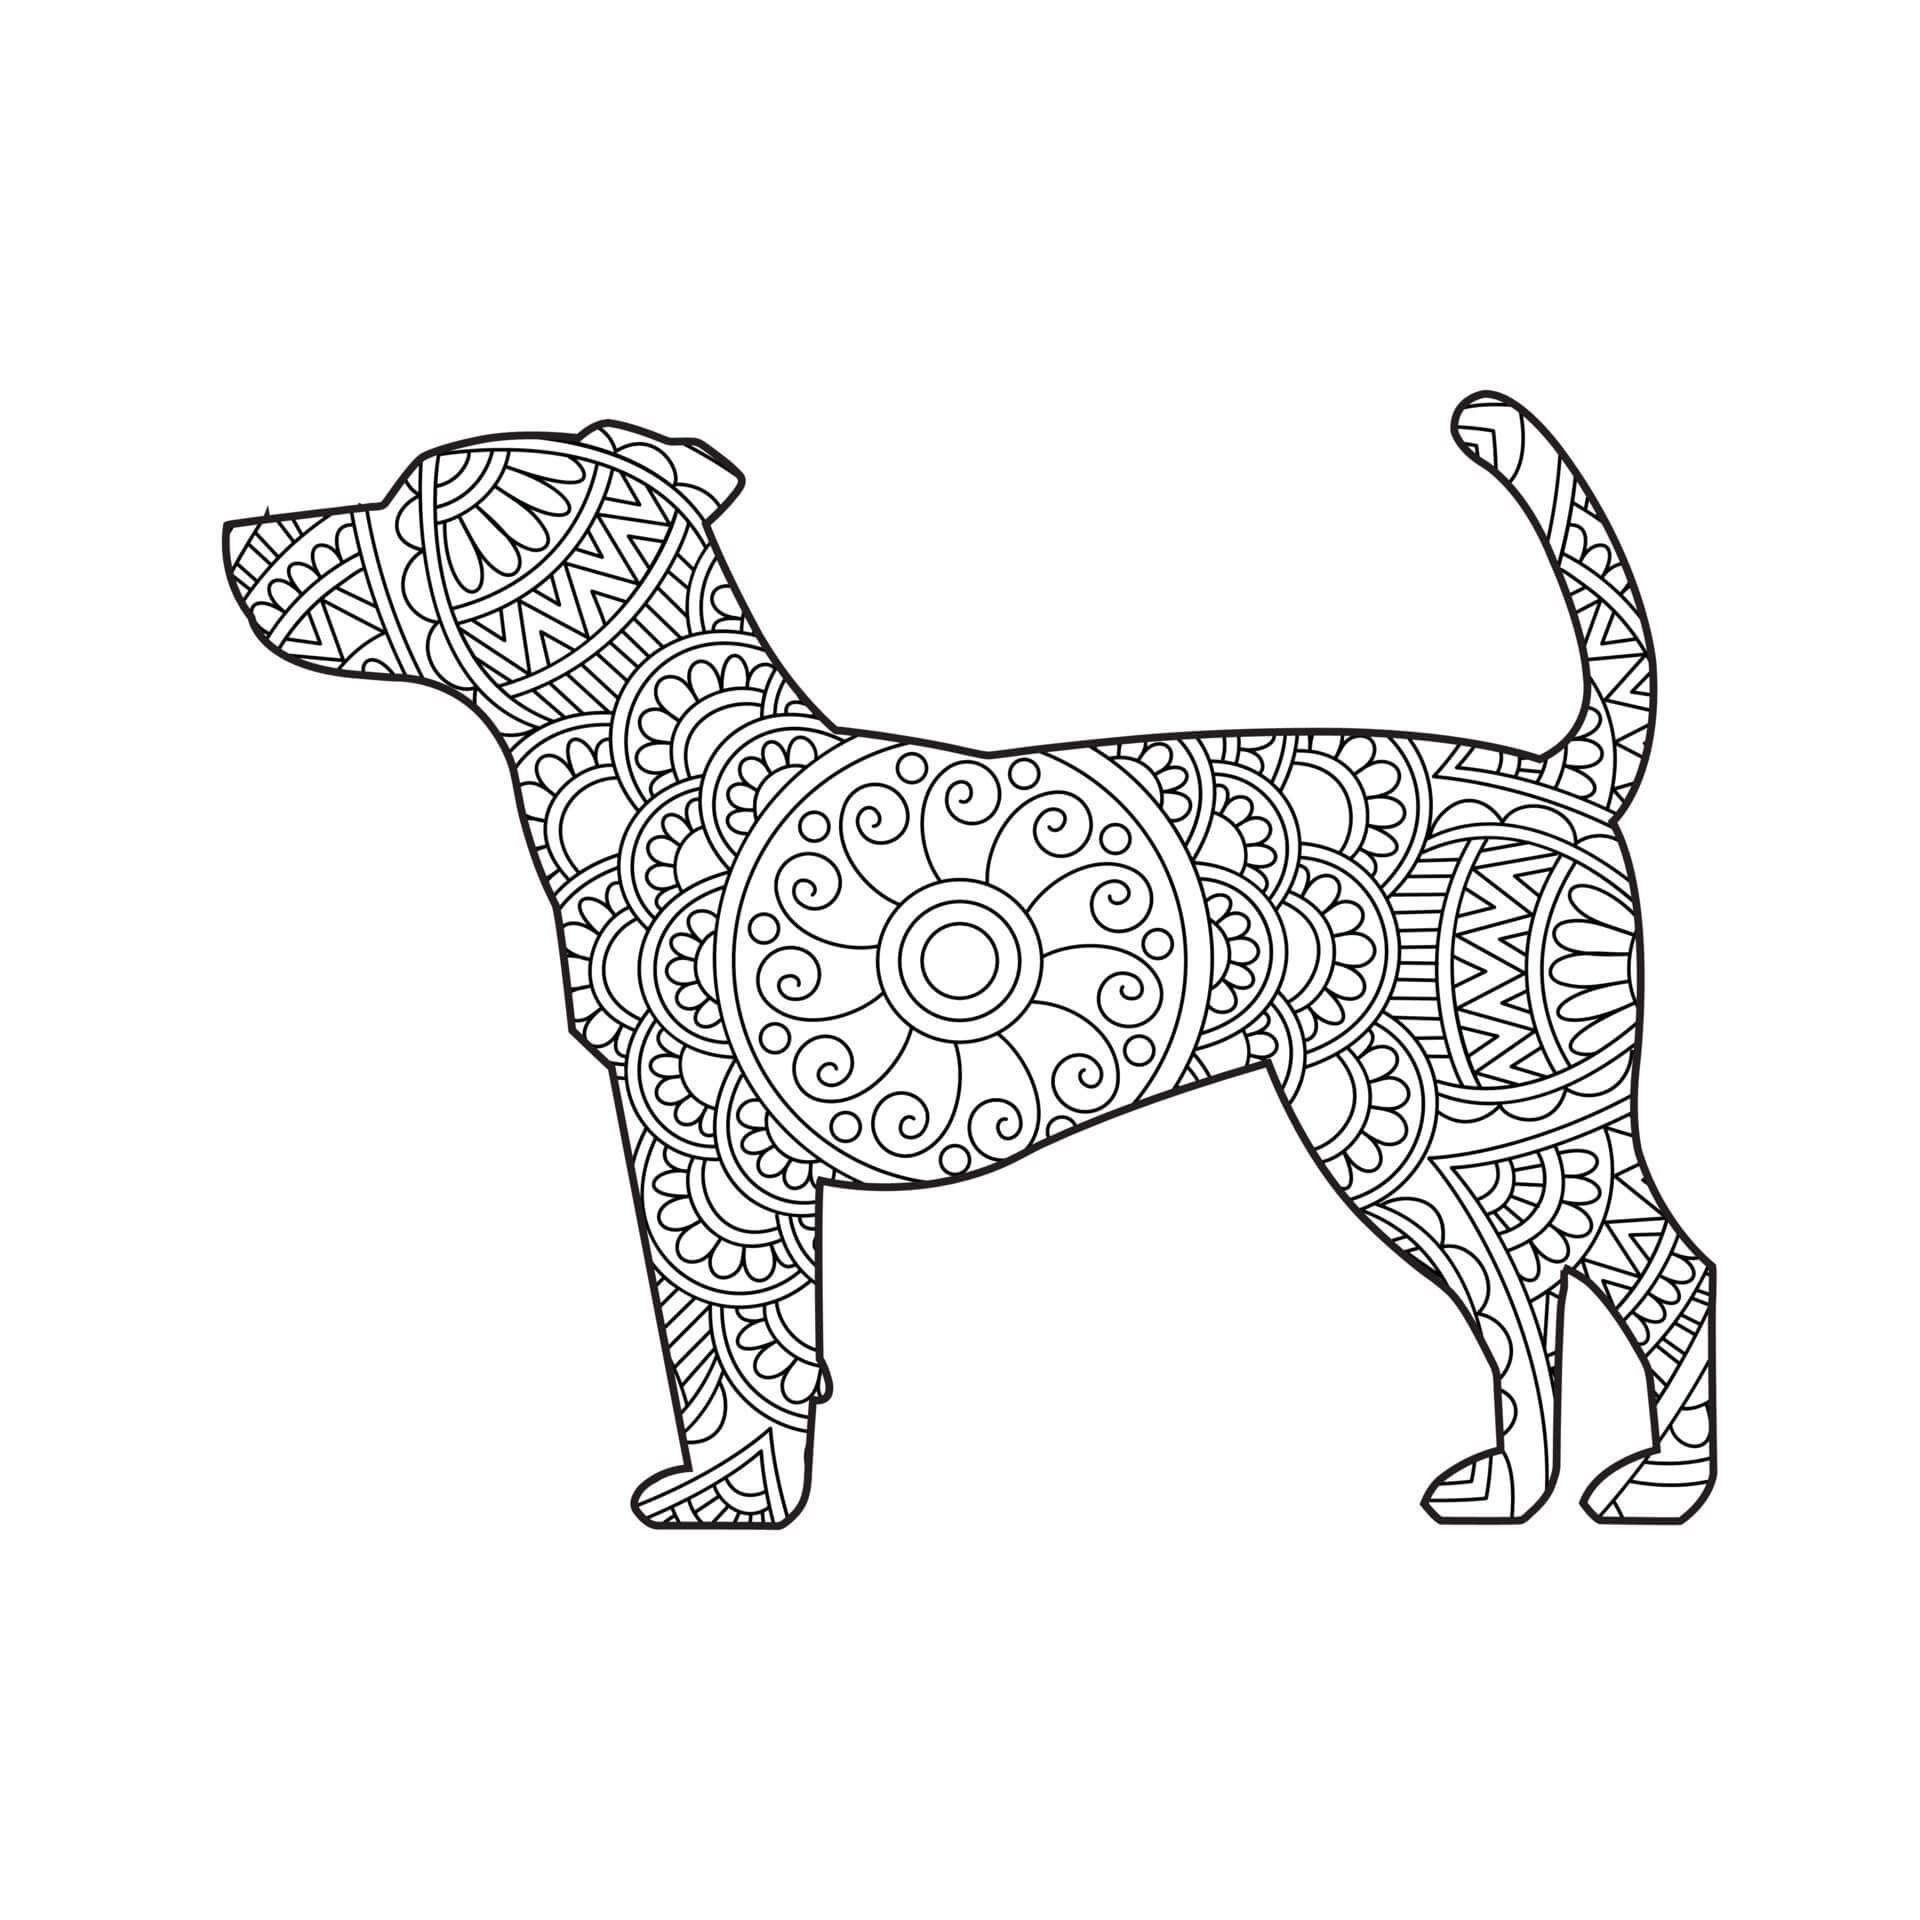 Mandala Dog Coloring Page - Sheet 4 Mandalas